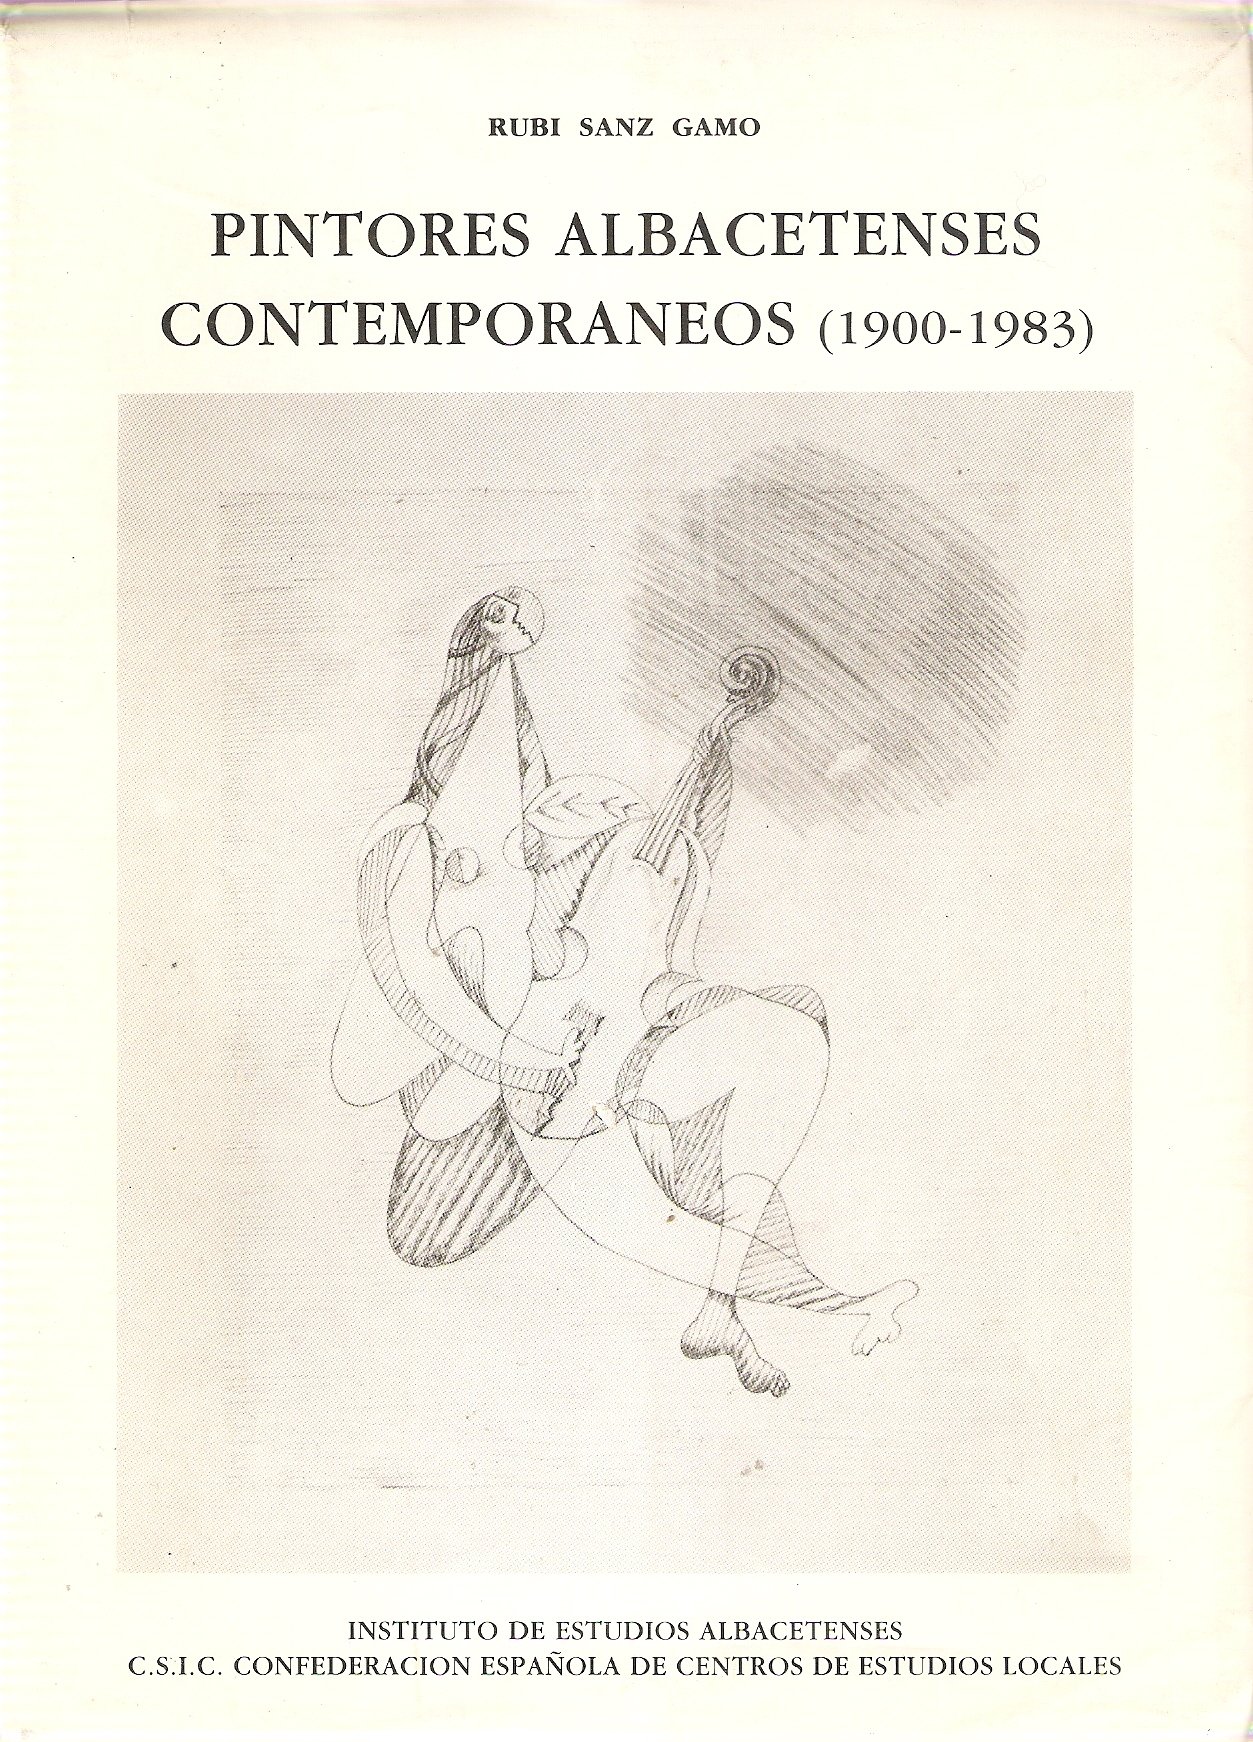 Imagen de portada del libro Pintores albacetenses contemporáneos (1900-1983)